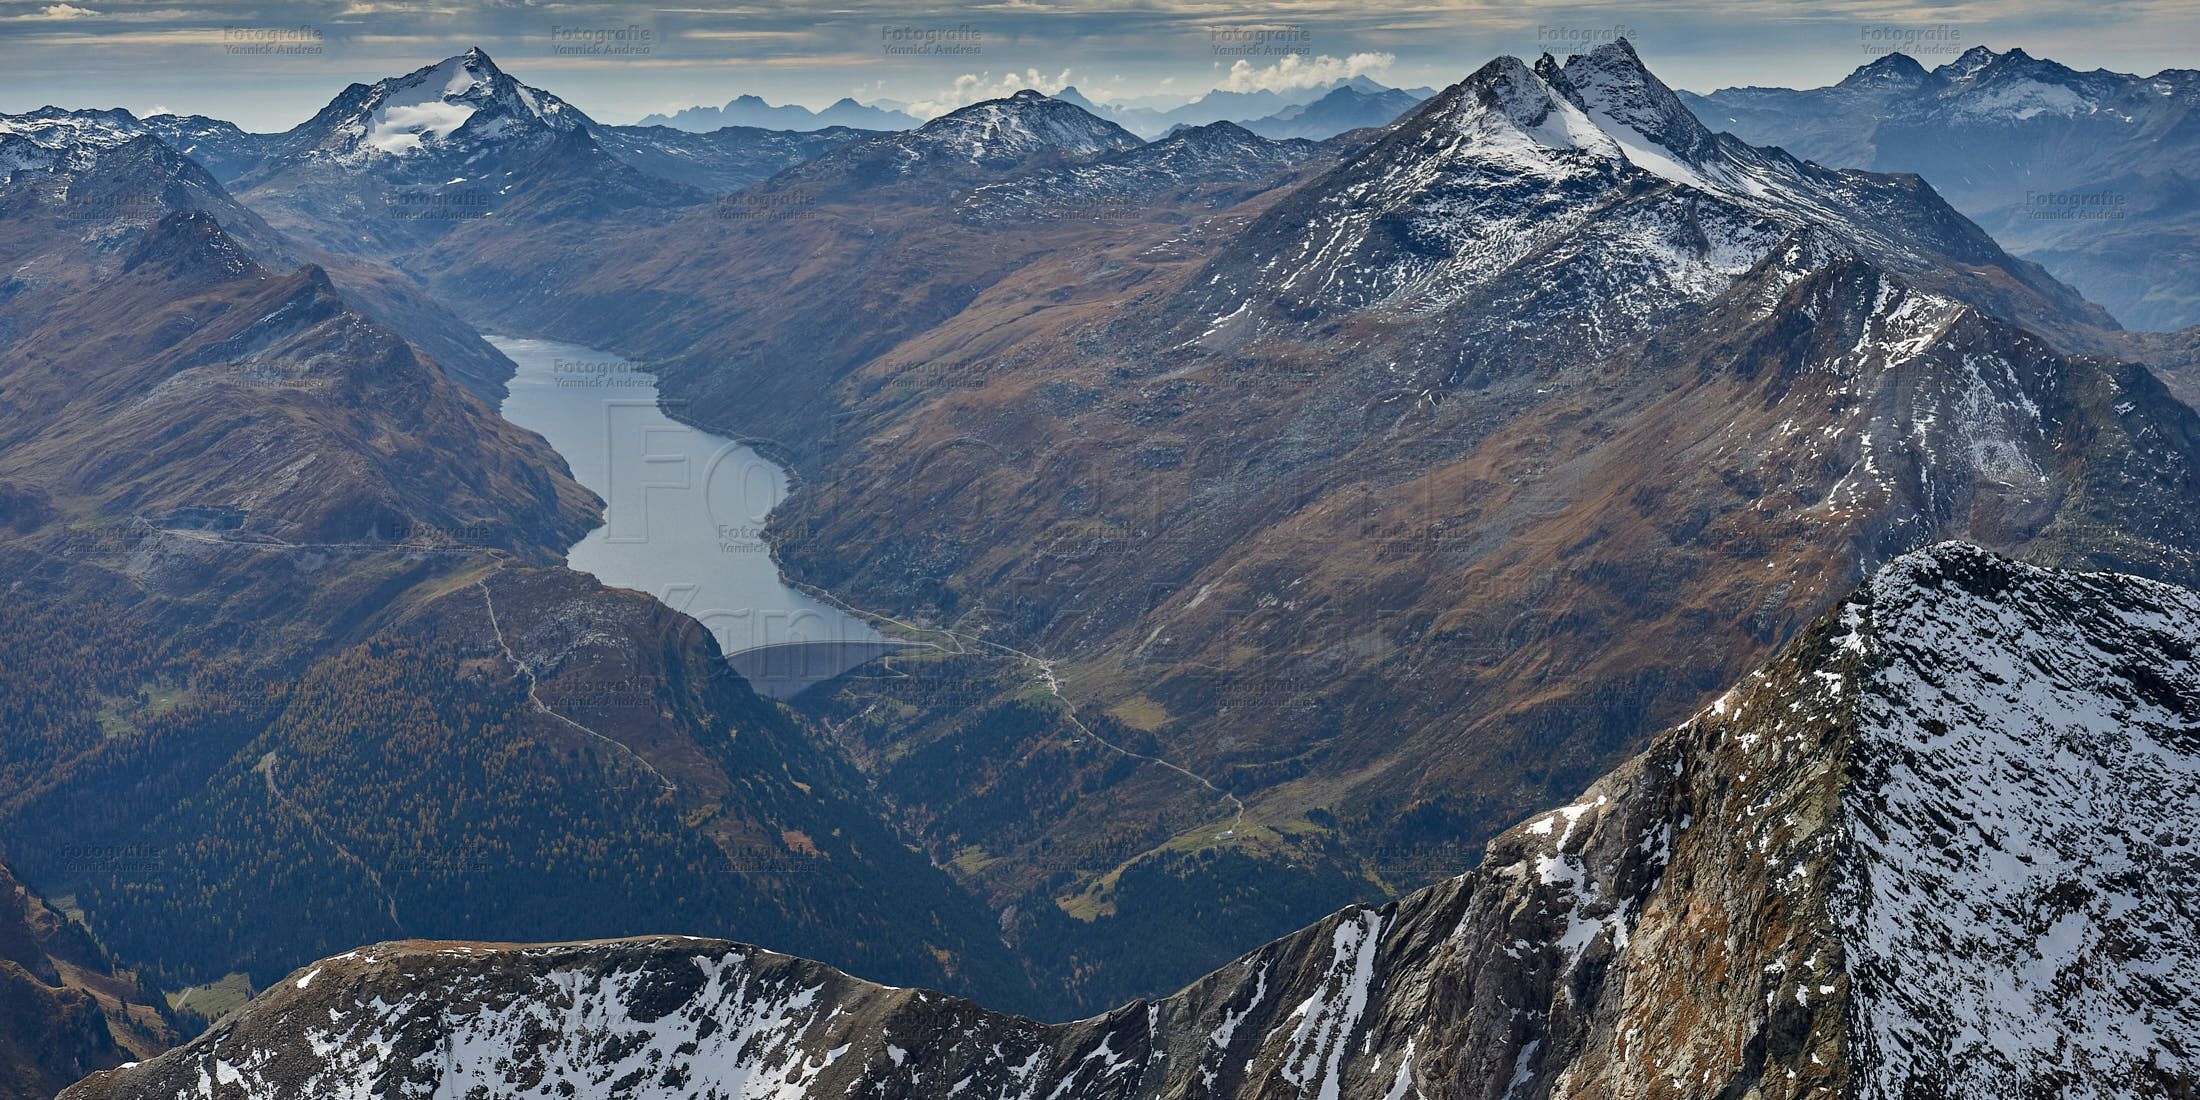 Bild zu dem Thema: Info / Aktuelles zu dem Jahr 2020: Luftbildaufnahme des Stausee Lago di Lej aus ca. 3´500 Meter aufgenommen. Luftbildfotografie / Luftaufnahme Graubünden, Schweiz.